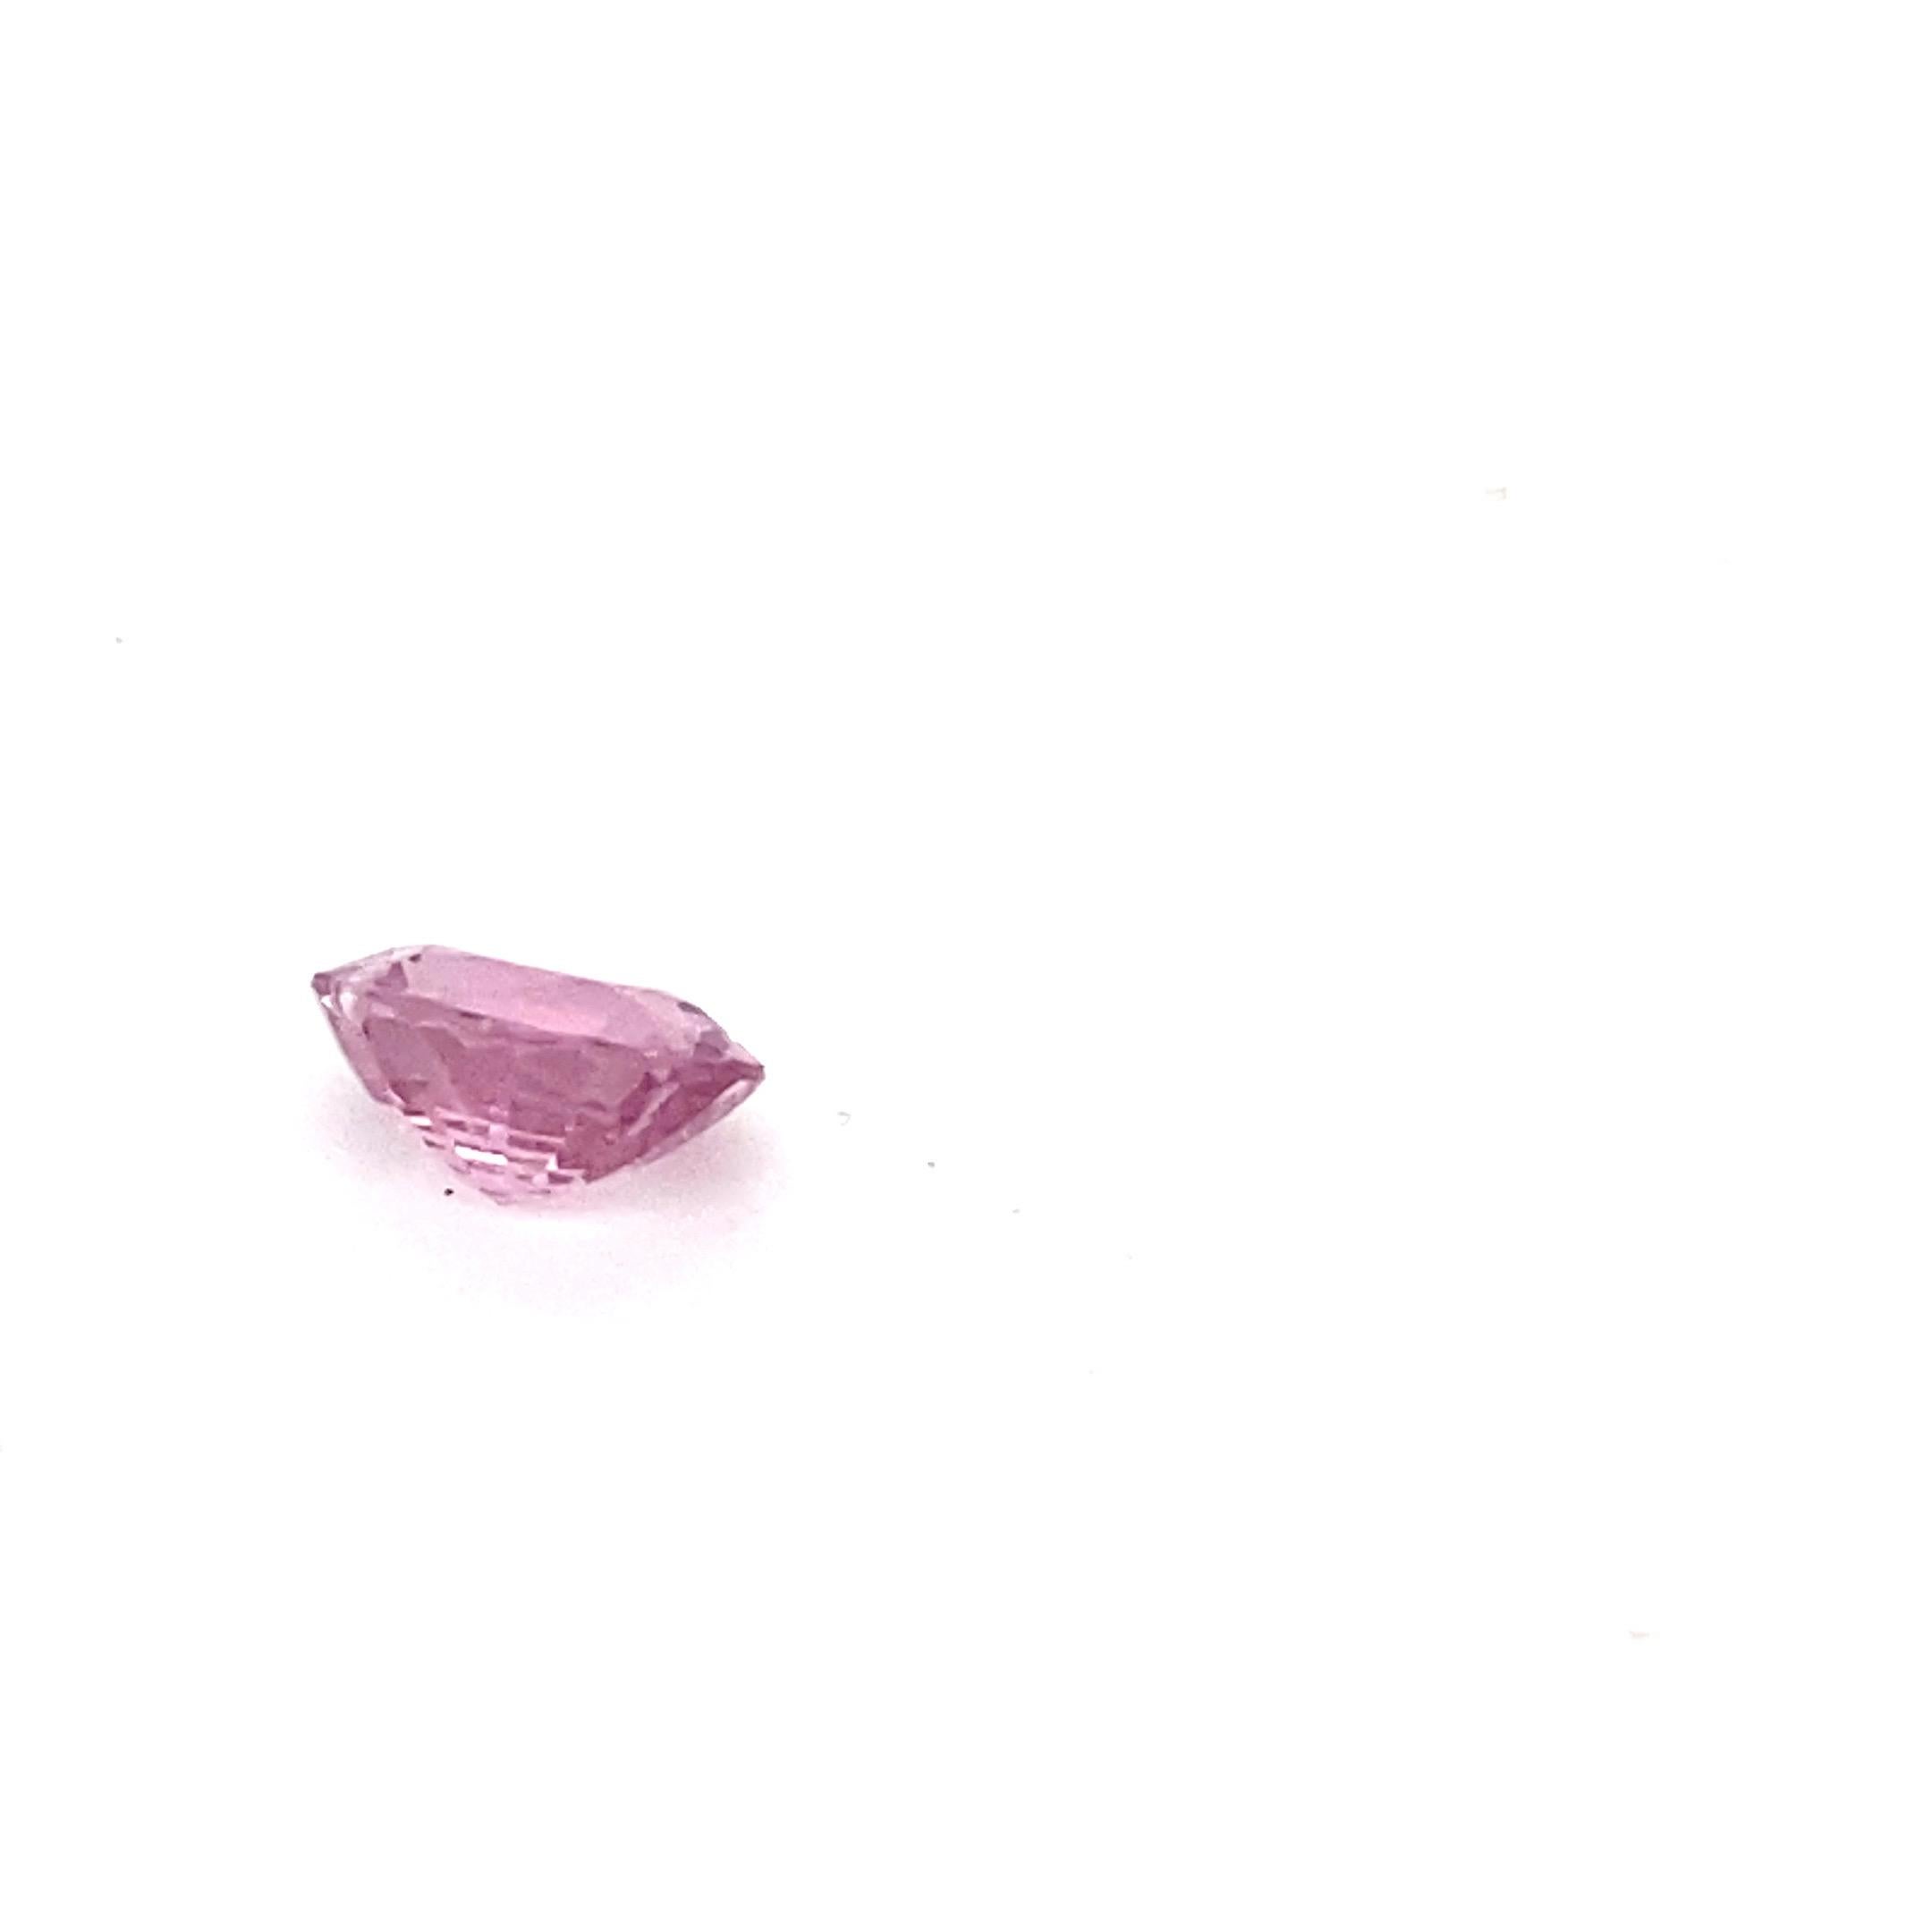 2.0 Carat Oval Shape Natural Pink Spinel Loose Gemstone For Sale 14